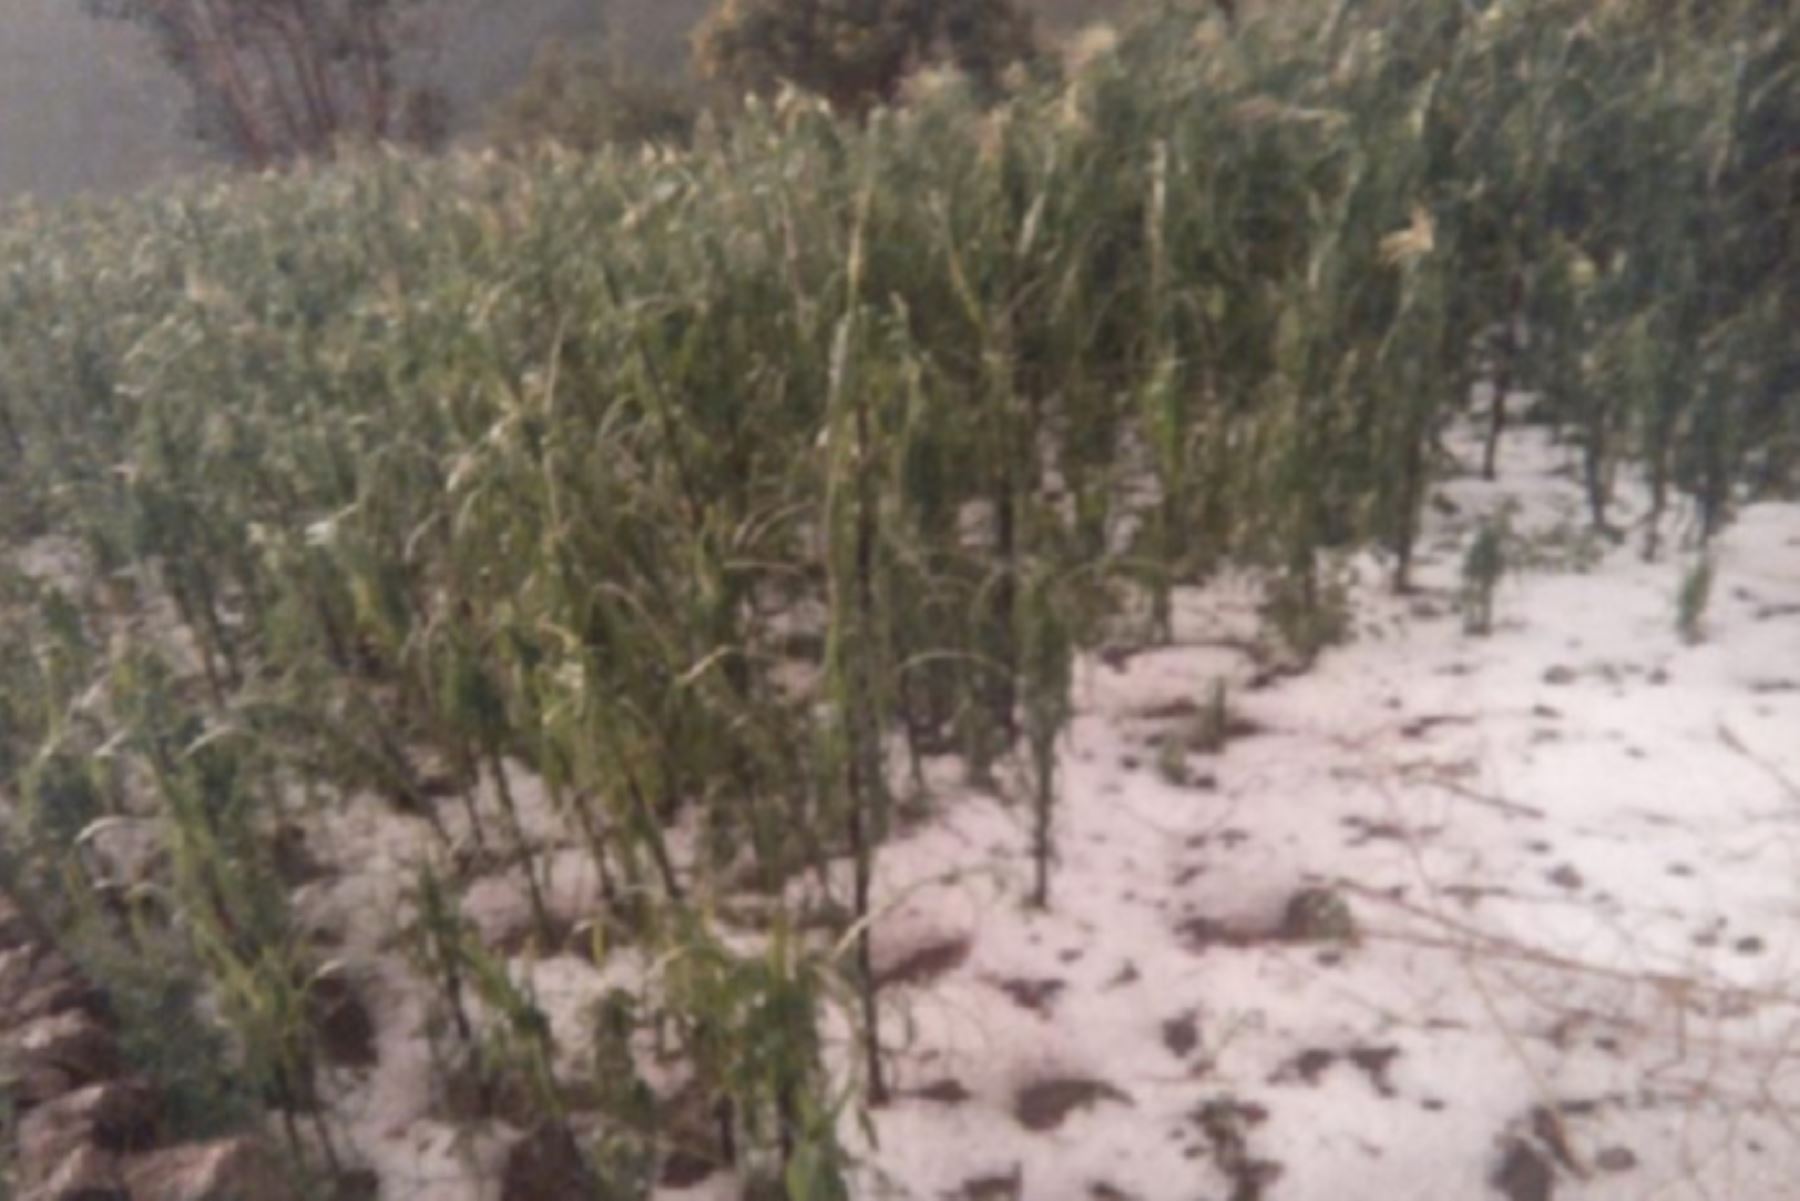 Al menos 20 hectáreas de cultivos resultaron dañadas a consecuencia del granizo que cayó en el distrito de Uranmarca, provincia de Chincheros, región Apurímac, informó el Instituto Nacional de Defensa Civil (Indeci).